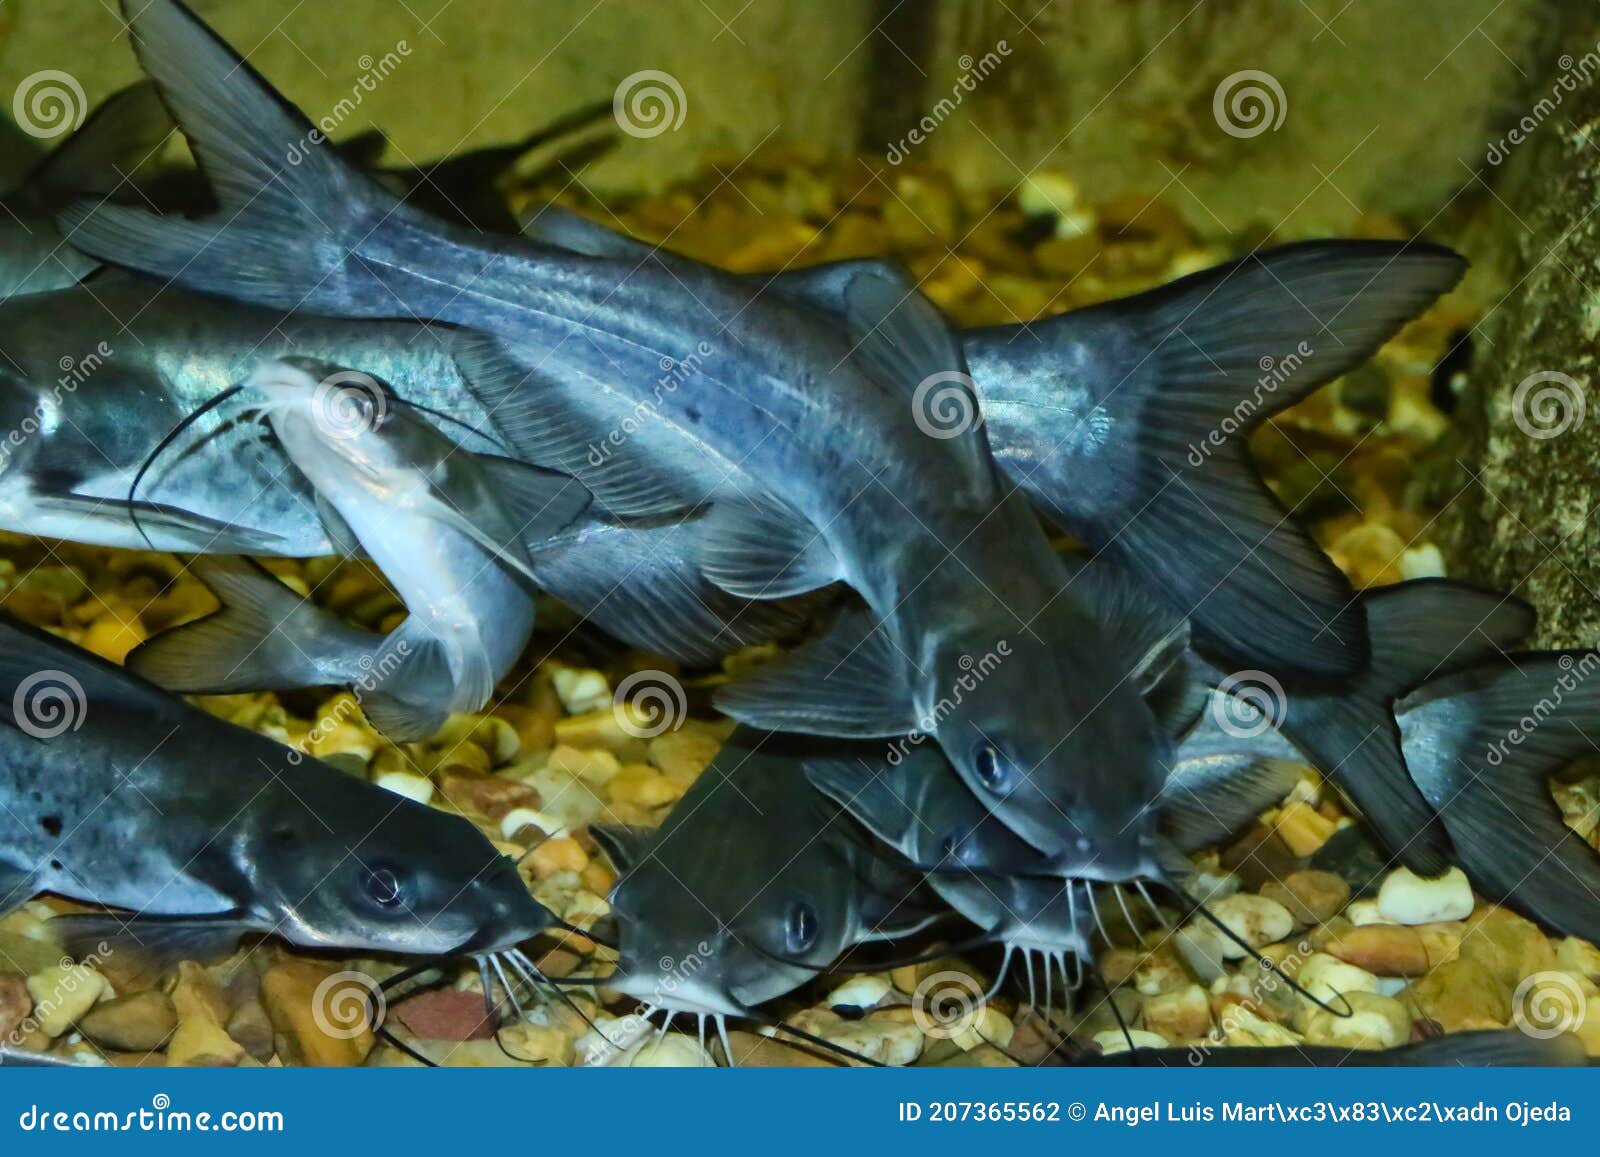 The Virtual Aquarium of Virginia Tech--Catfish